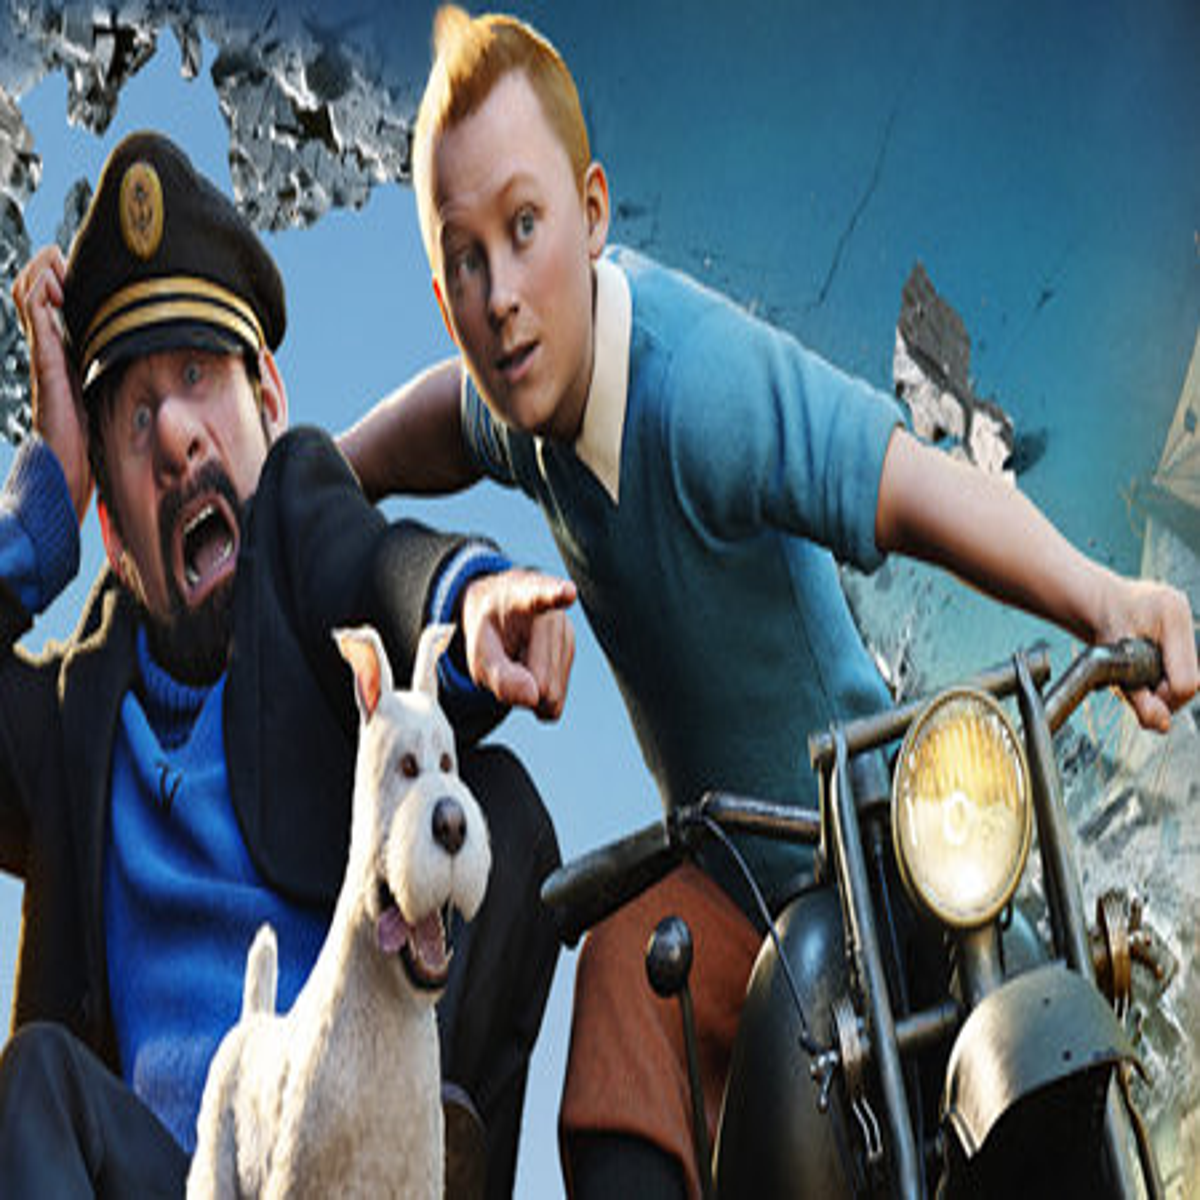 As Aventuras de Tintin o segredo do Licorne - O jogo (the game Tintim) -  Xbox 360 